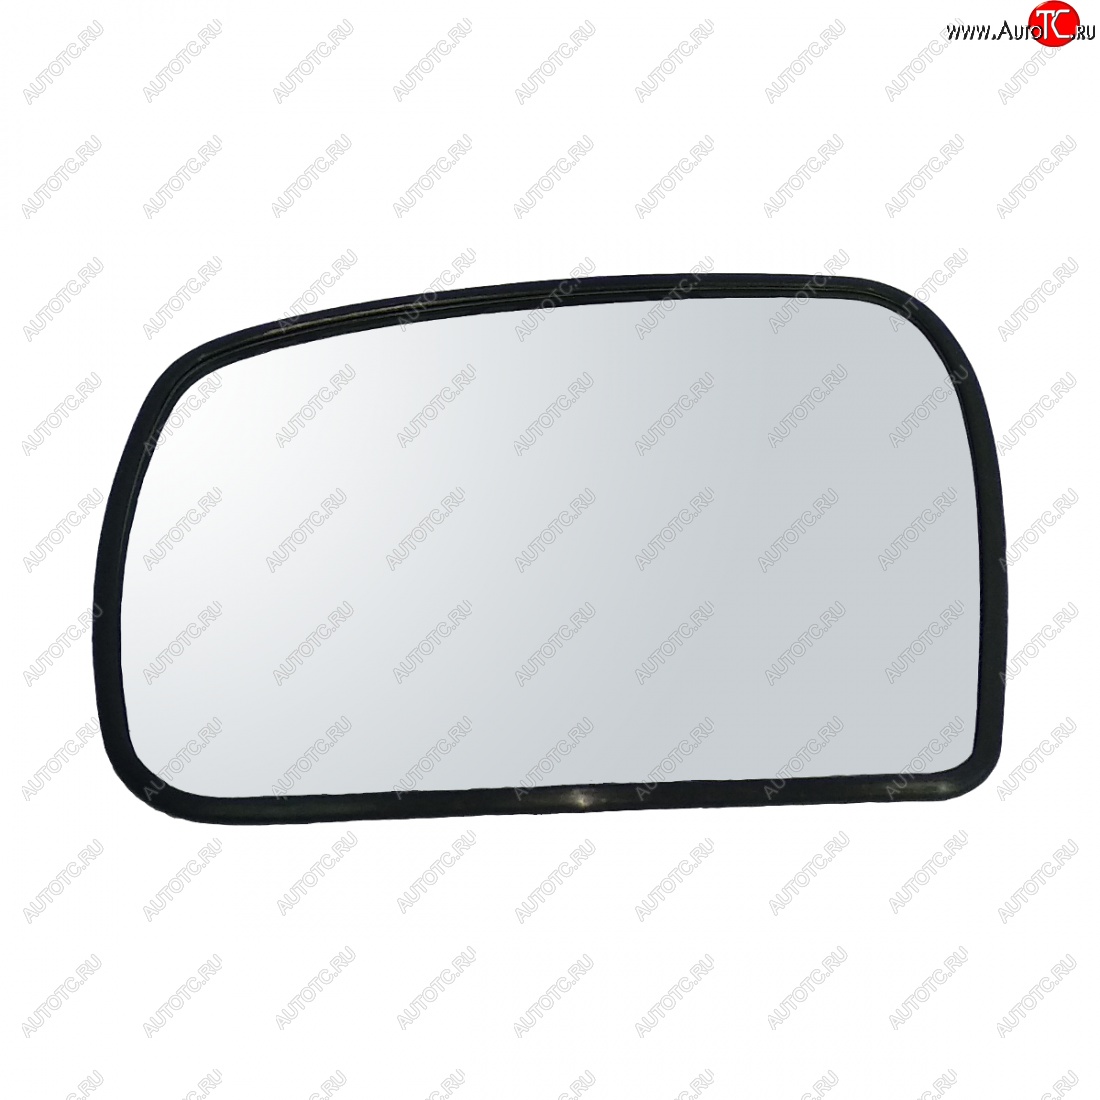 319 р. Левый зеркальный элемент (под квадр.моторедуктор) AutoBlik2  Chevrolet Niva  2123 (2009-2020) (без антибликового покрытия)